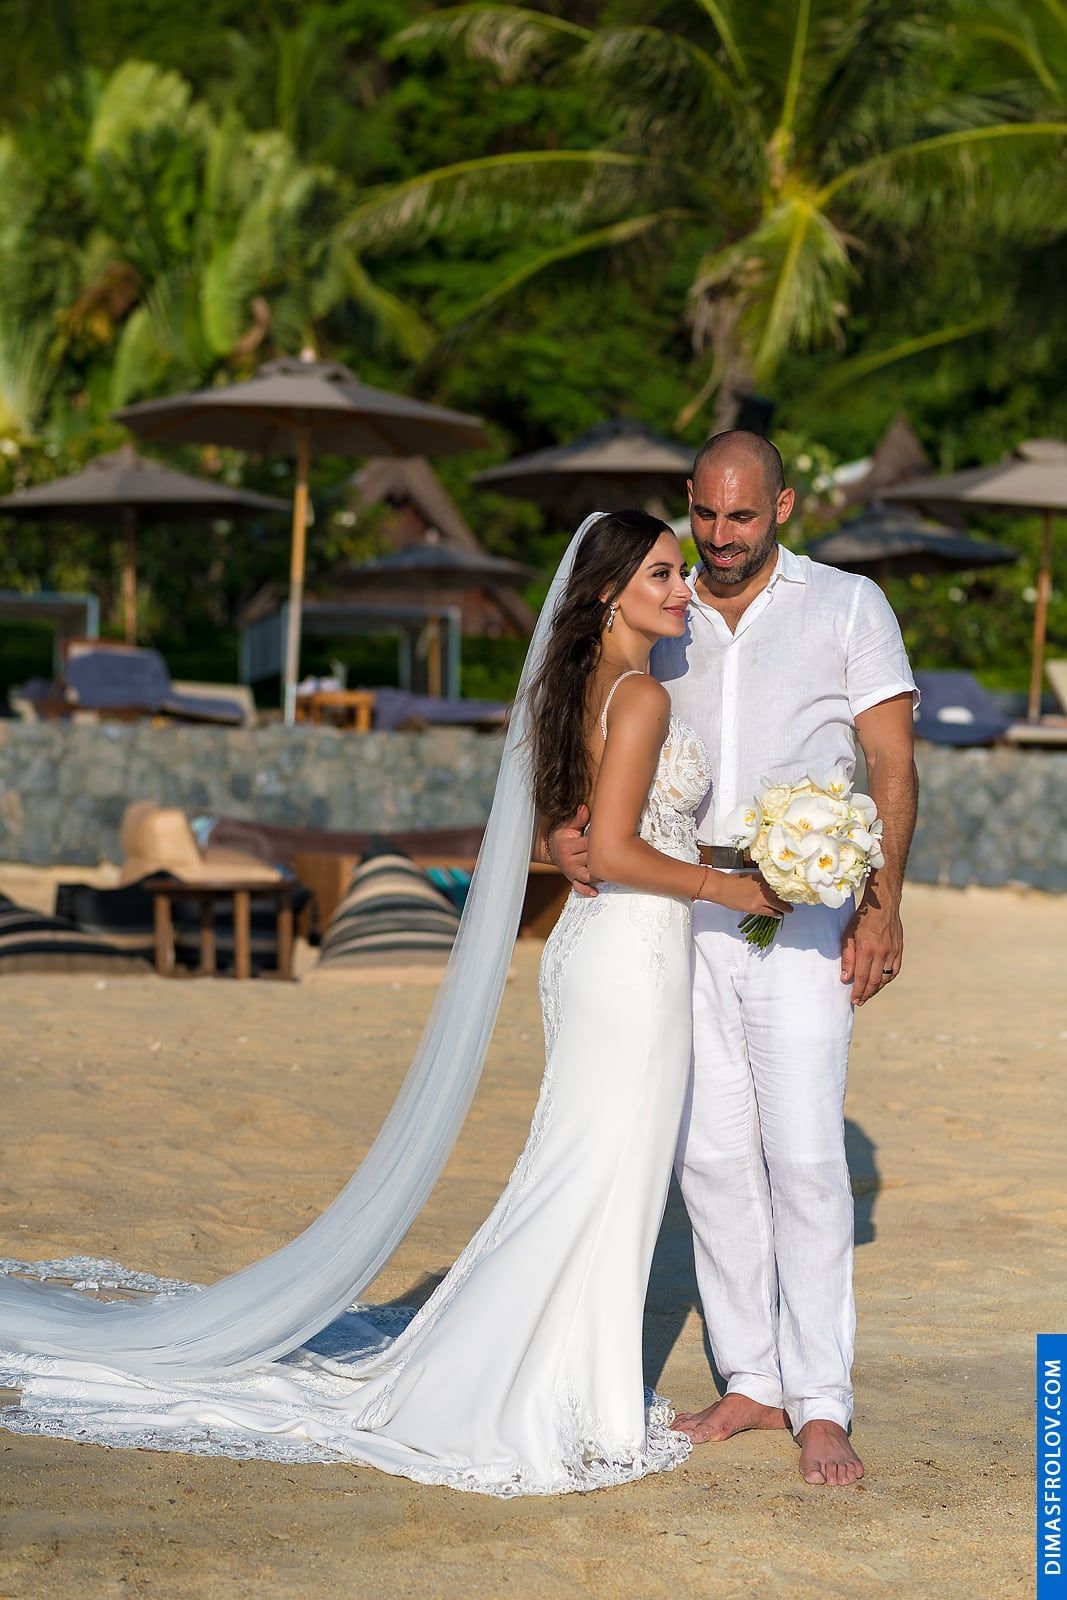 พิธีแต่งงาน ณ โรงแรมอินเตอร์คอนติเนนตัล เกาะสมุย - Natalie & Simon. บาทต่อภาพ 48210 (2023-05-04 03:54:37)